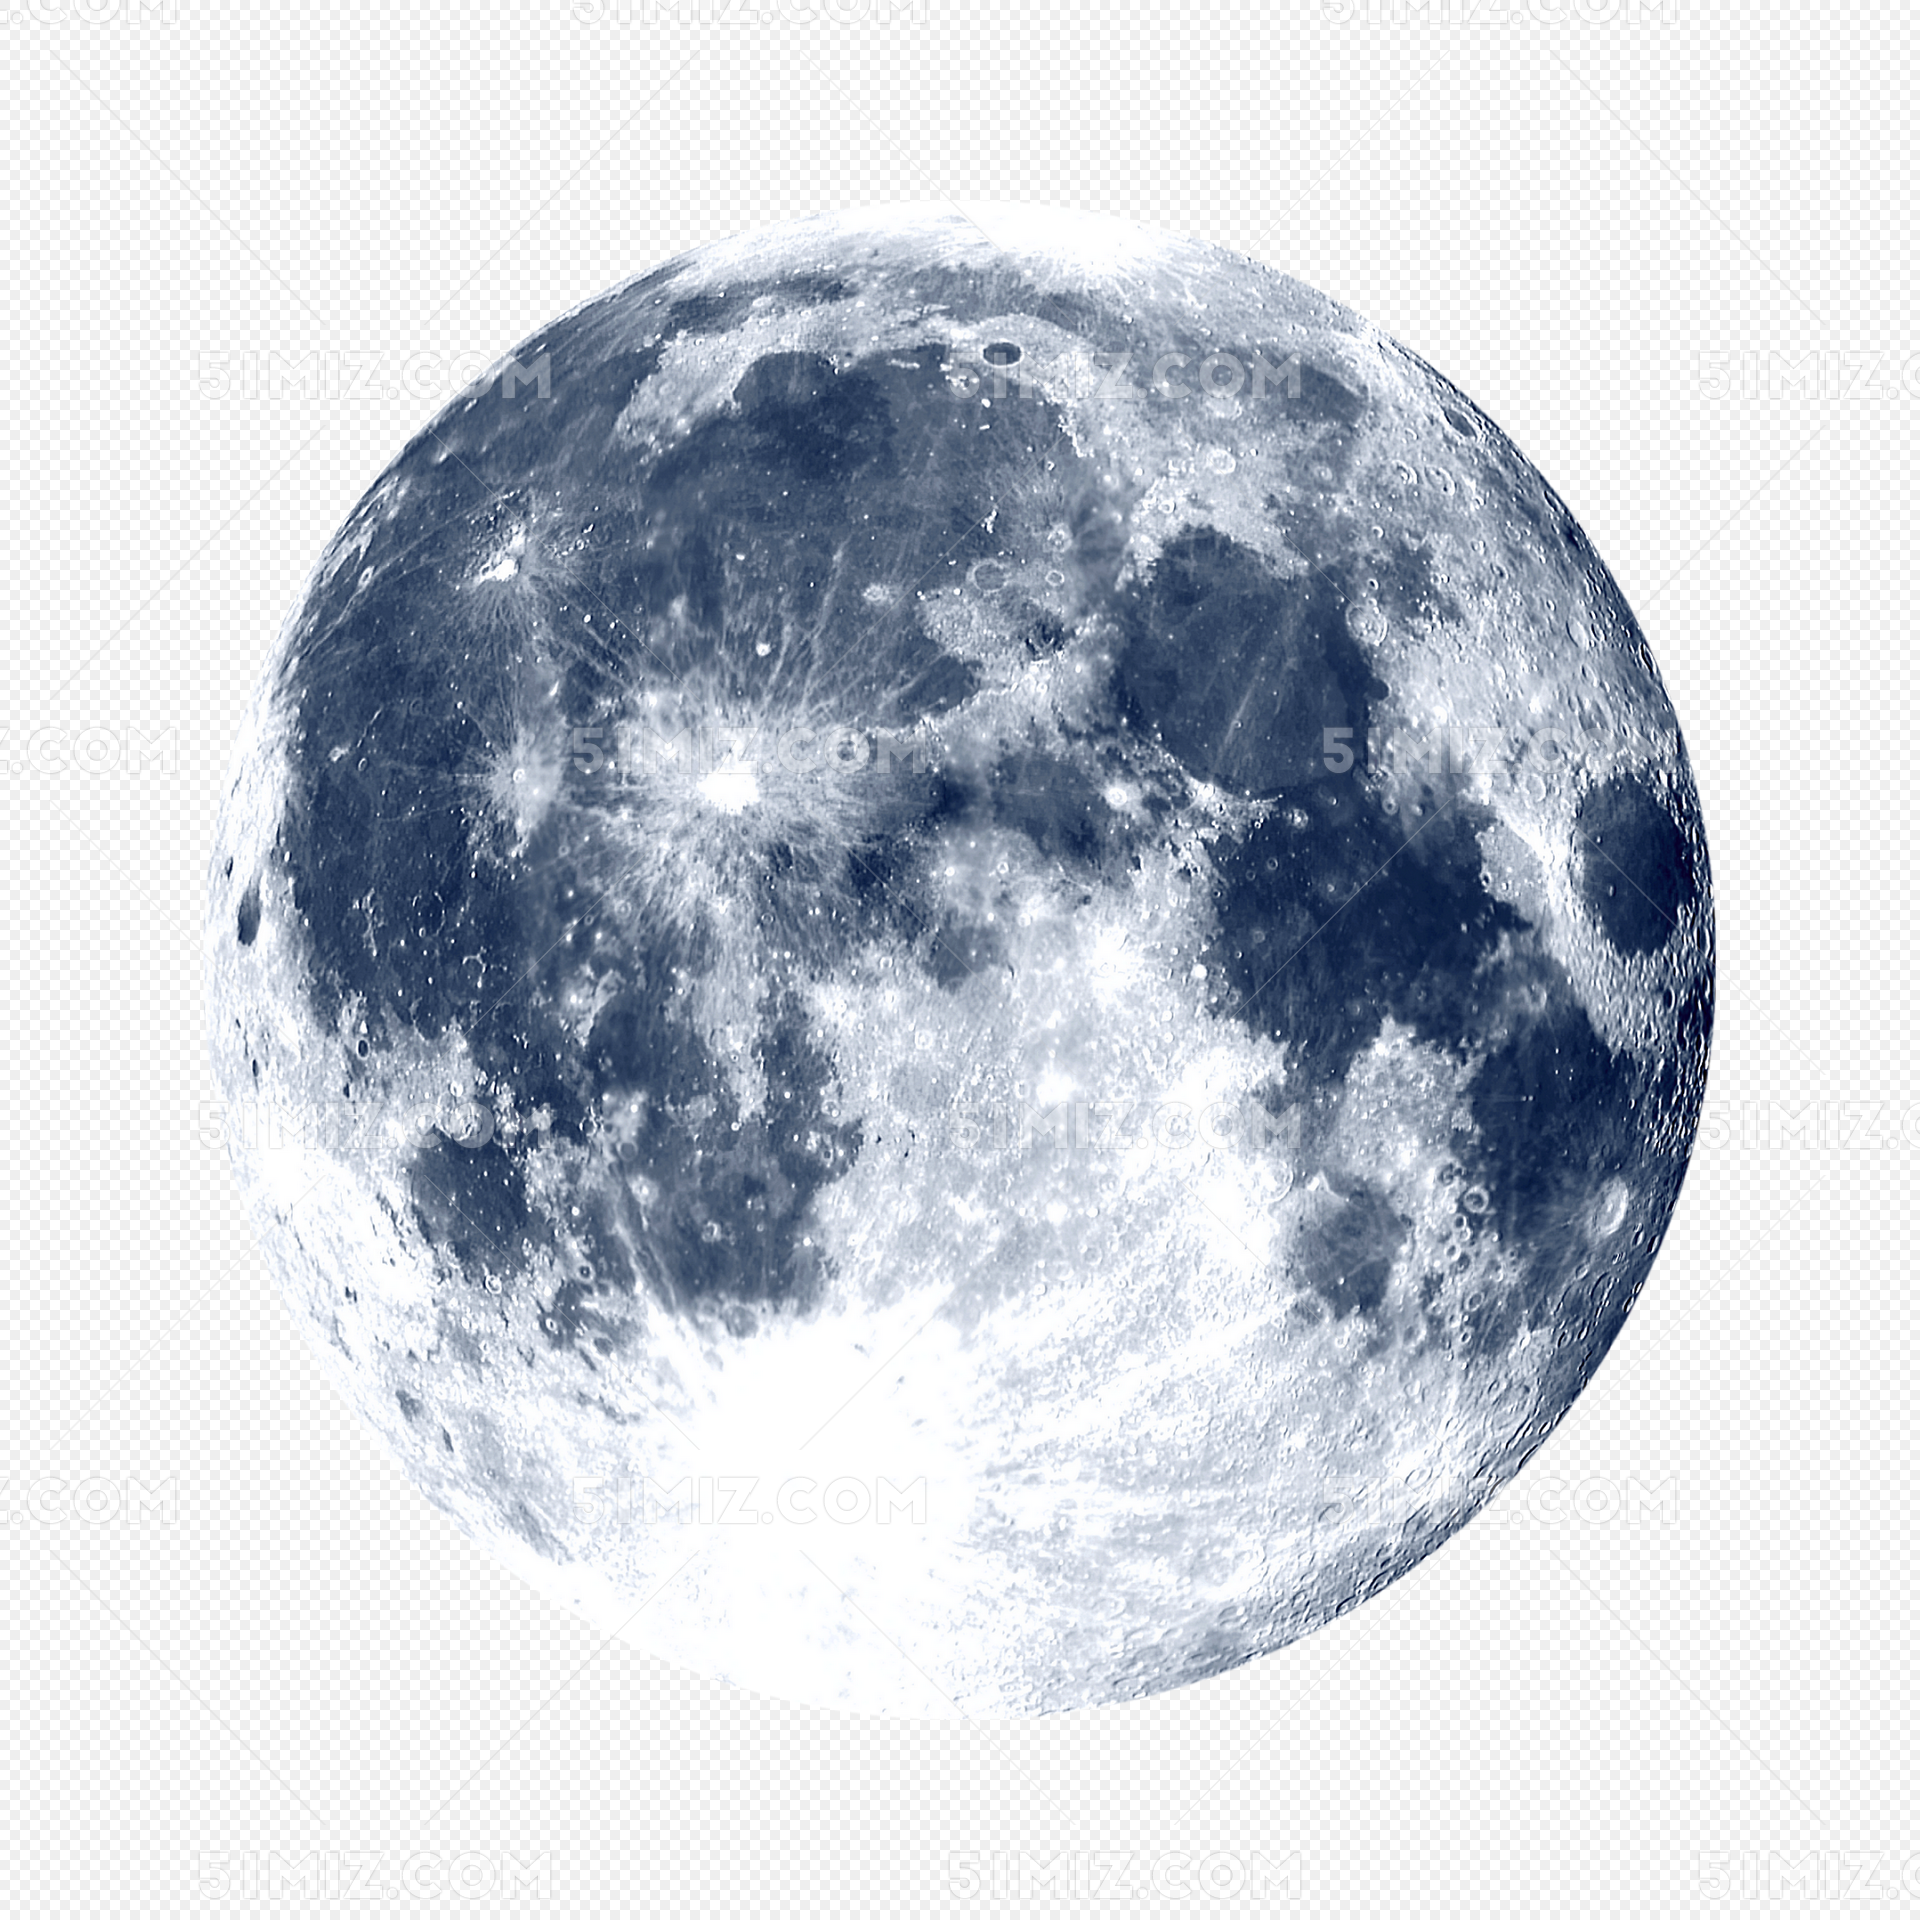 有哪些很好看的月亮的图片啊？ - 知乎